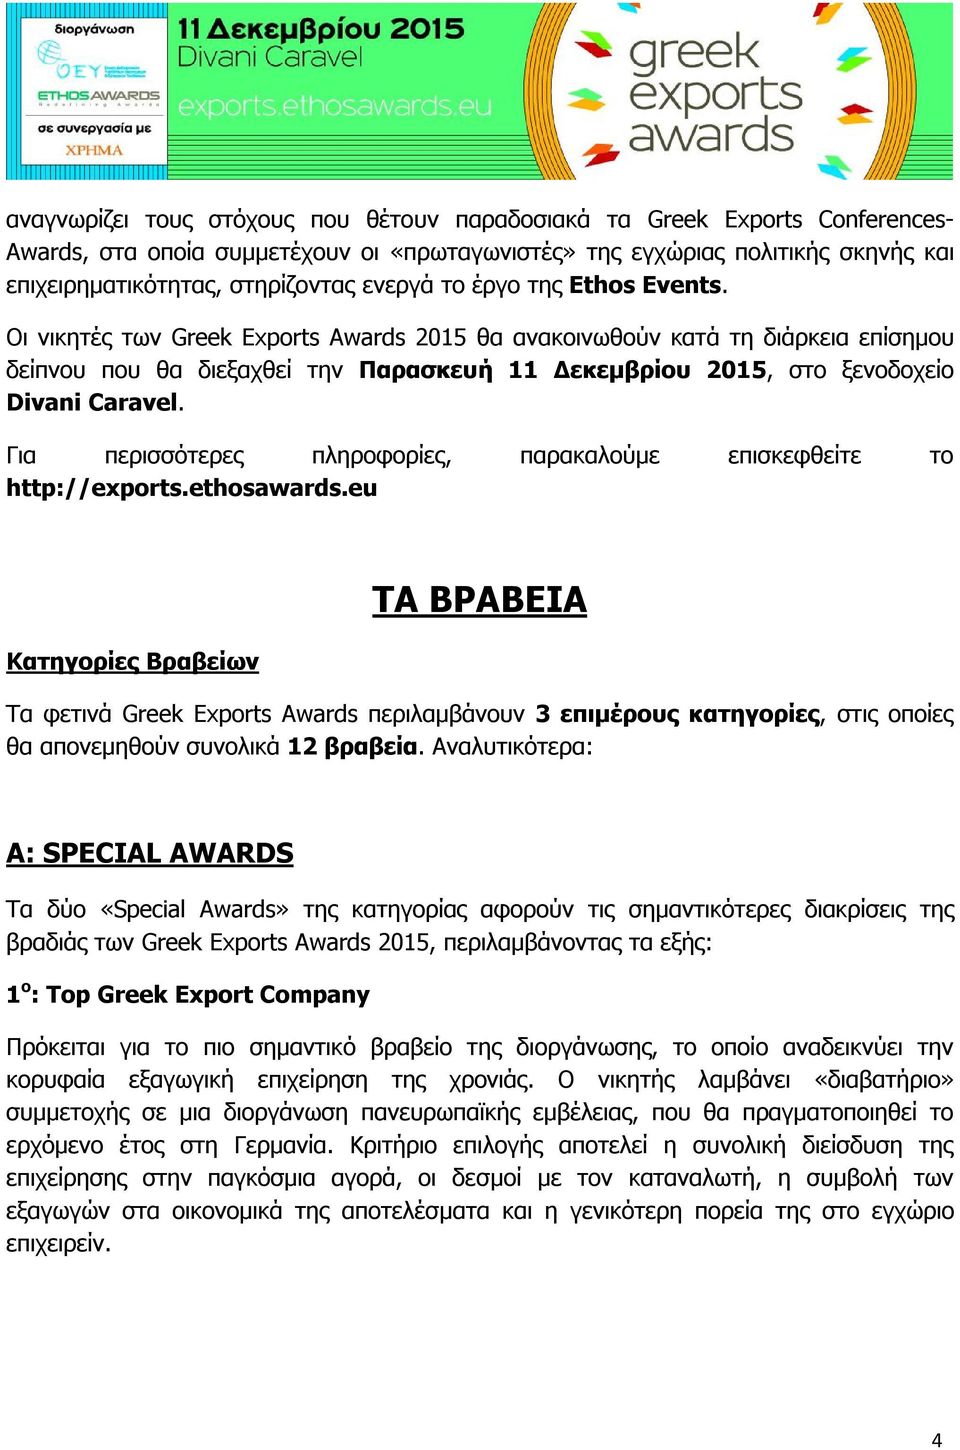 Οι νικητές των Greek Exports Awards 2015 θα ανακοινωθούν κατά τη διάρκεια επίσημου δείπνου που θα διεξαχθεί την Παρασκευή 11 Δεκεμβρίου 2015, στο ξενοδοχείο Divani Caravel.